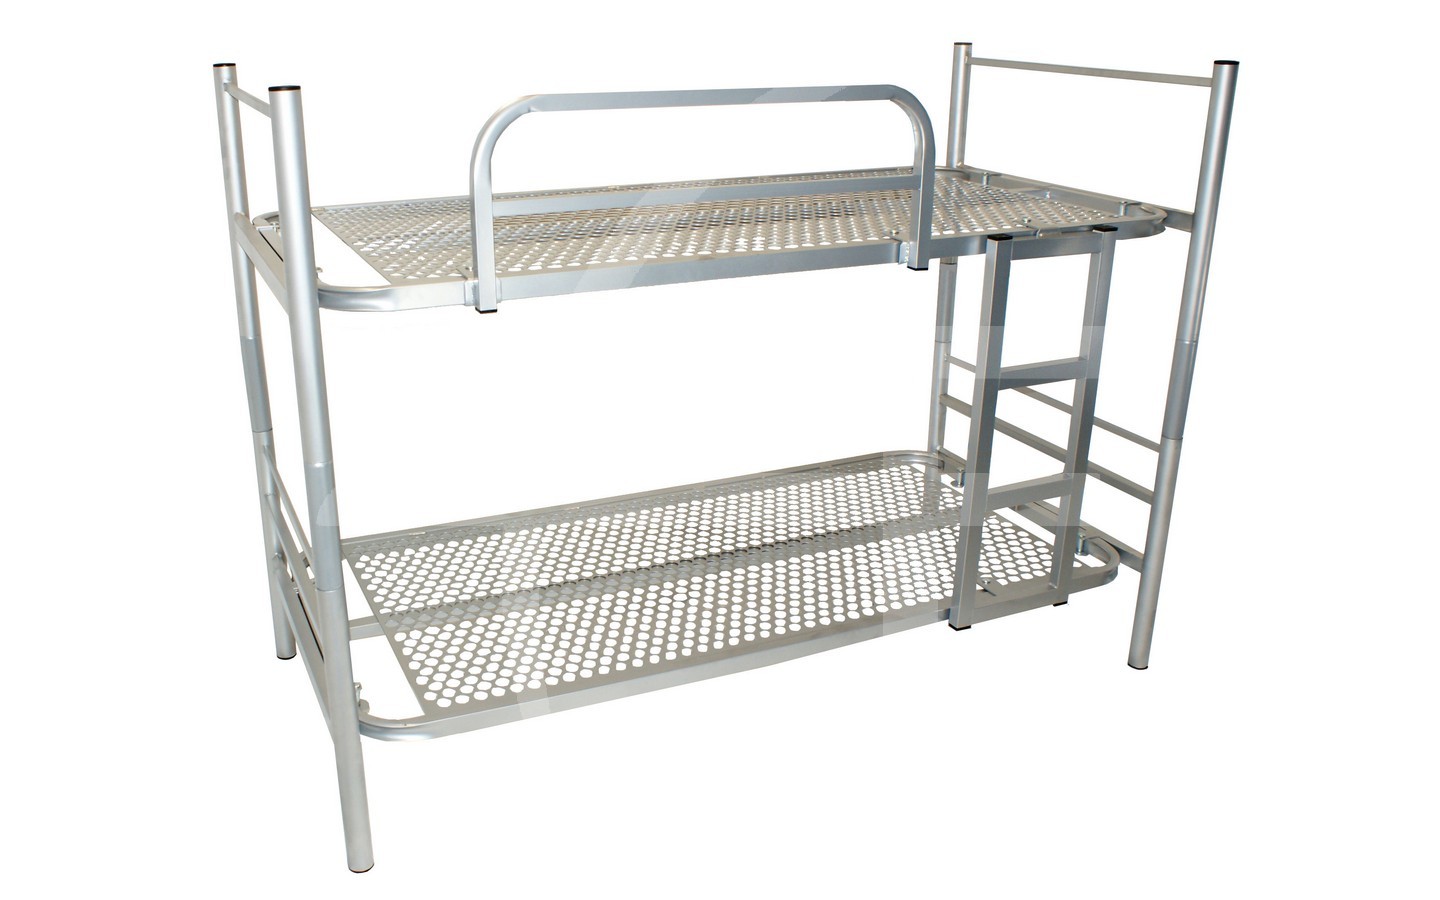 Bunk Beds For S Steel, Convertible Metal Bunk Beds